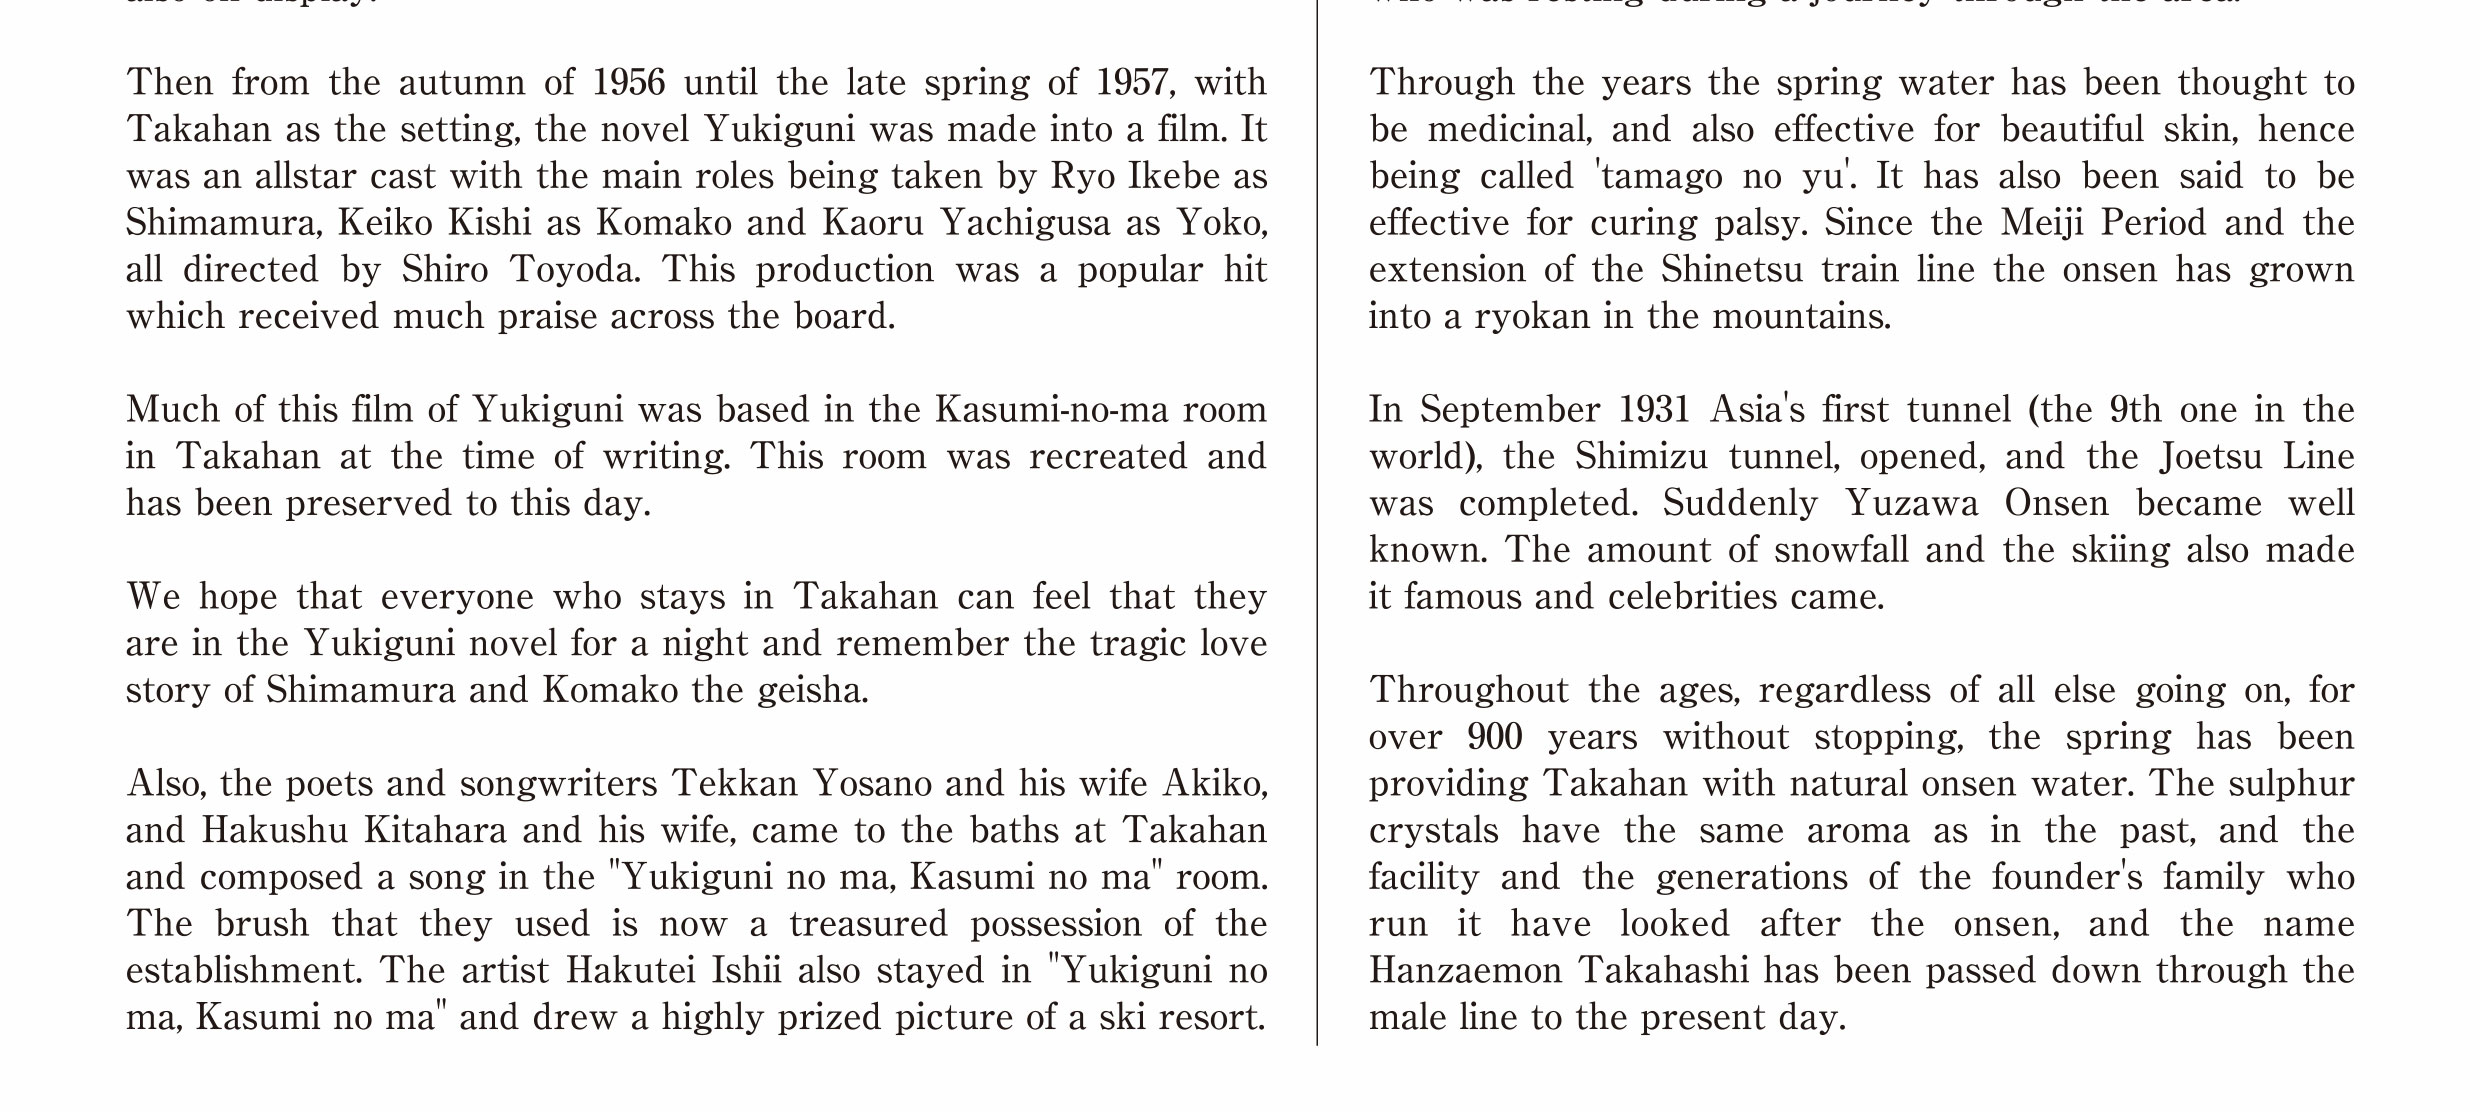 The history of Takahana